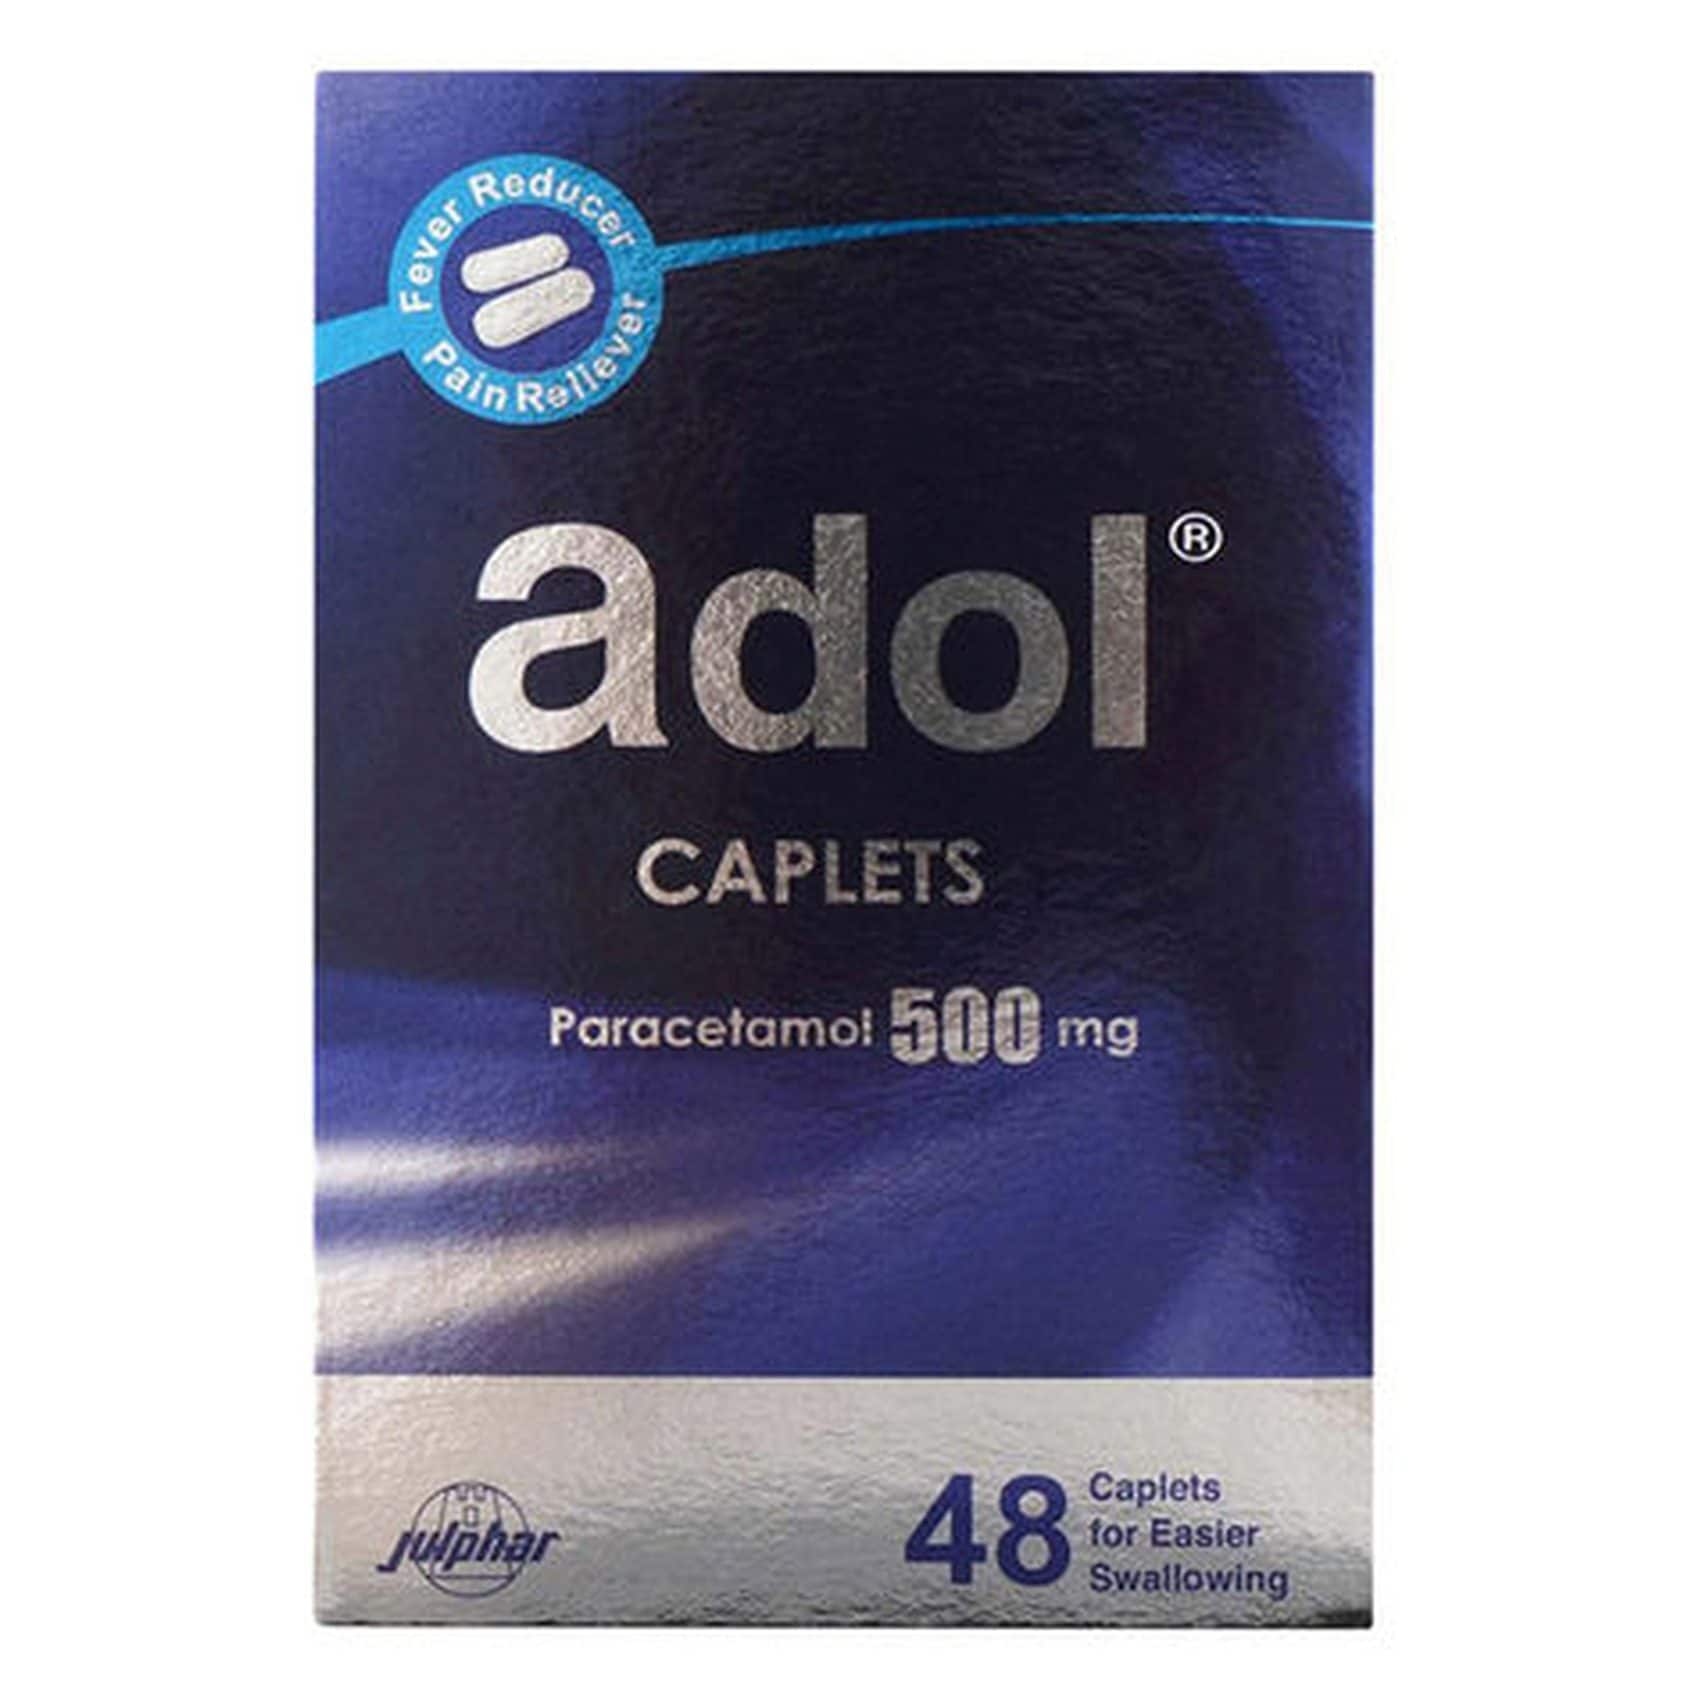 Adol Paracetamol 500mg 48 Caplets